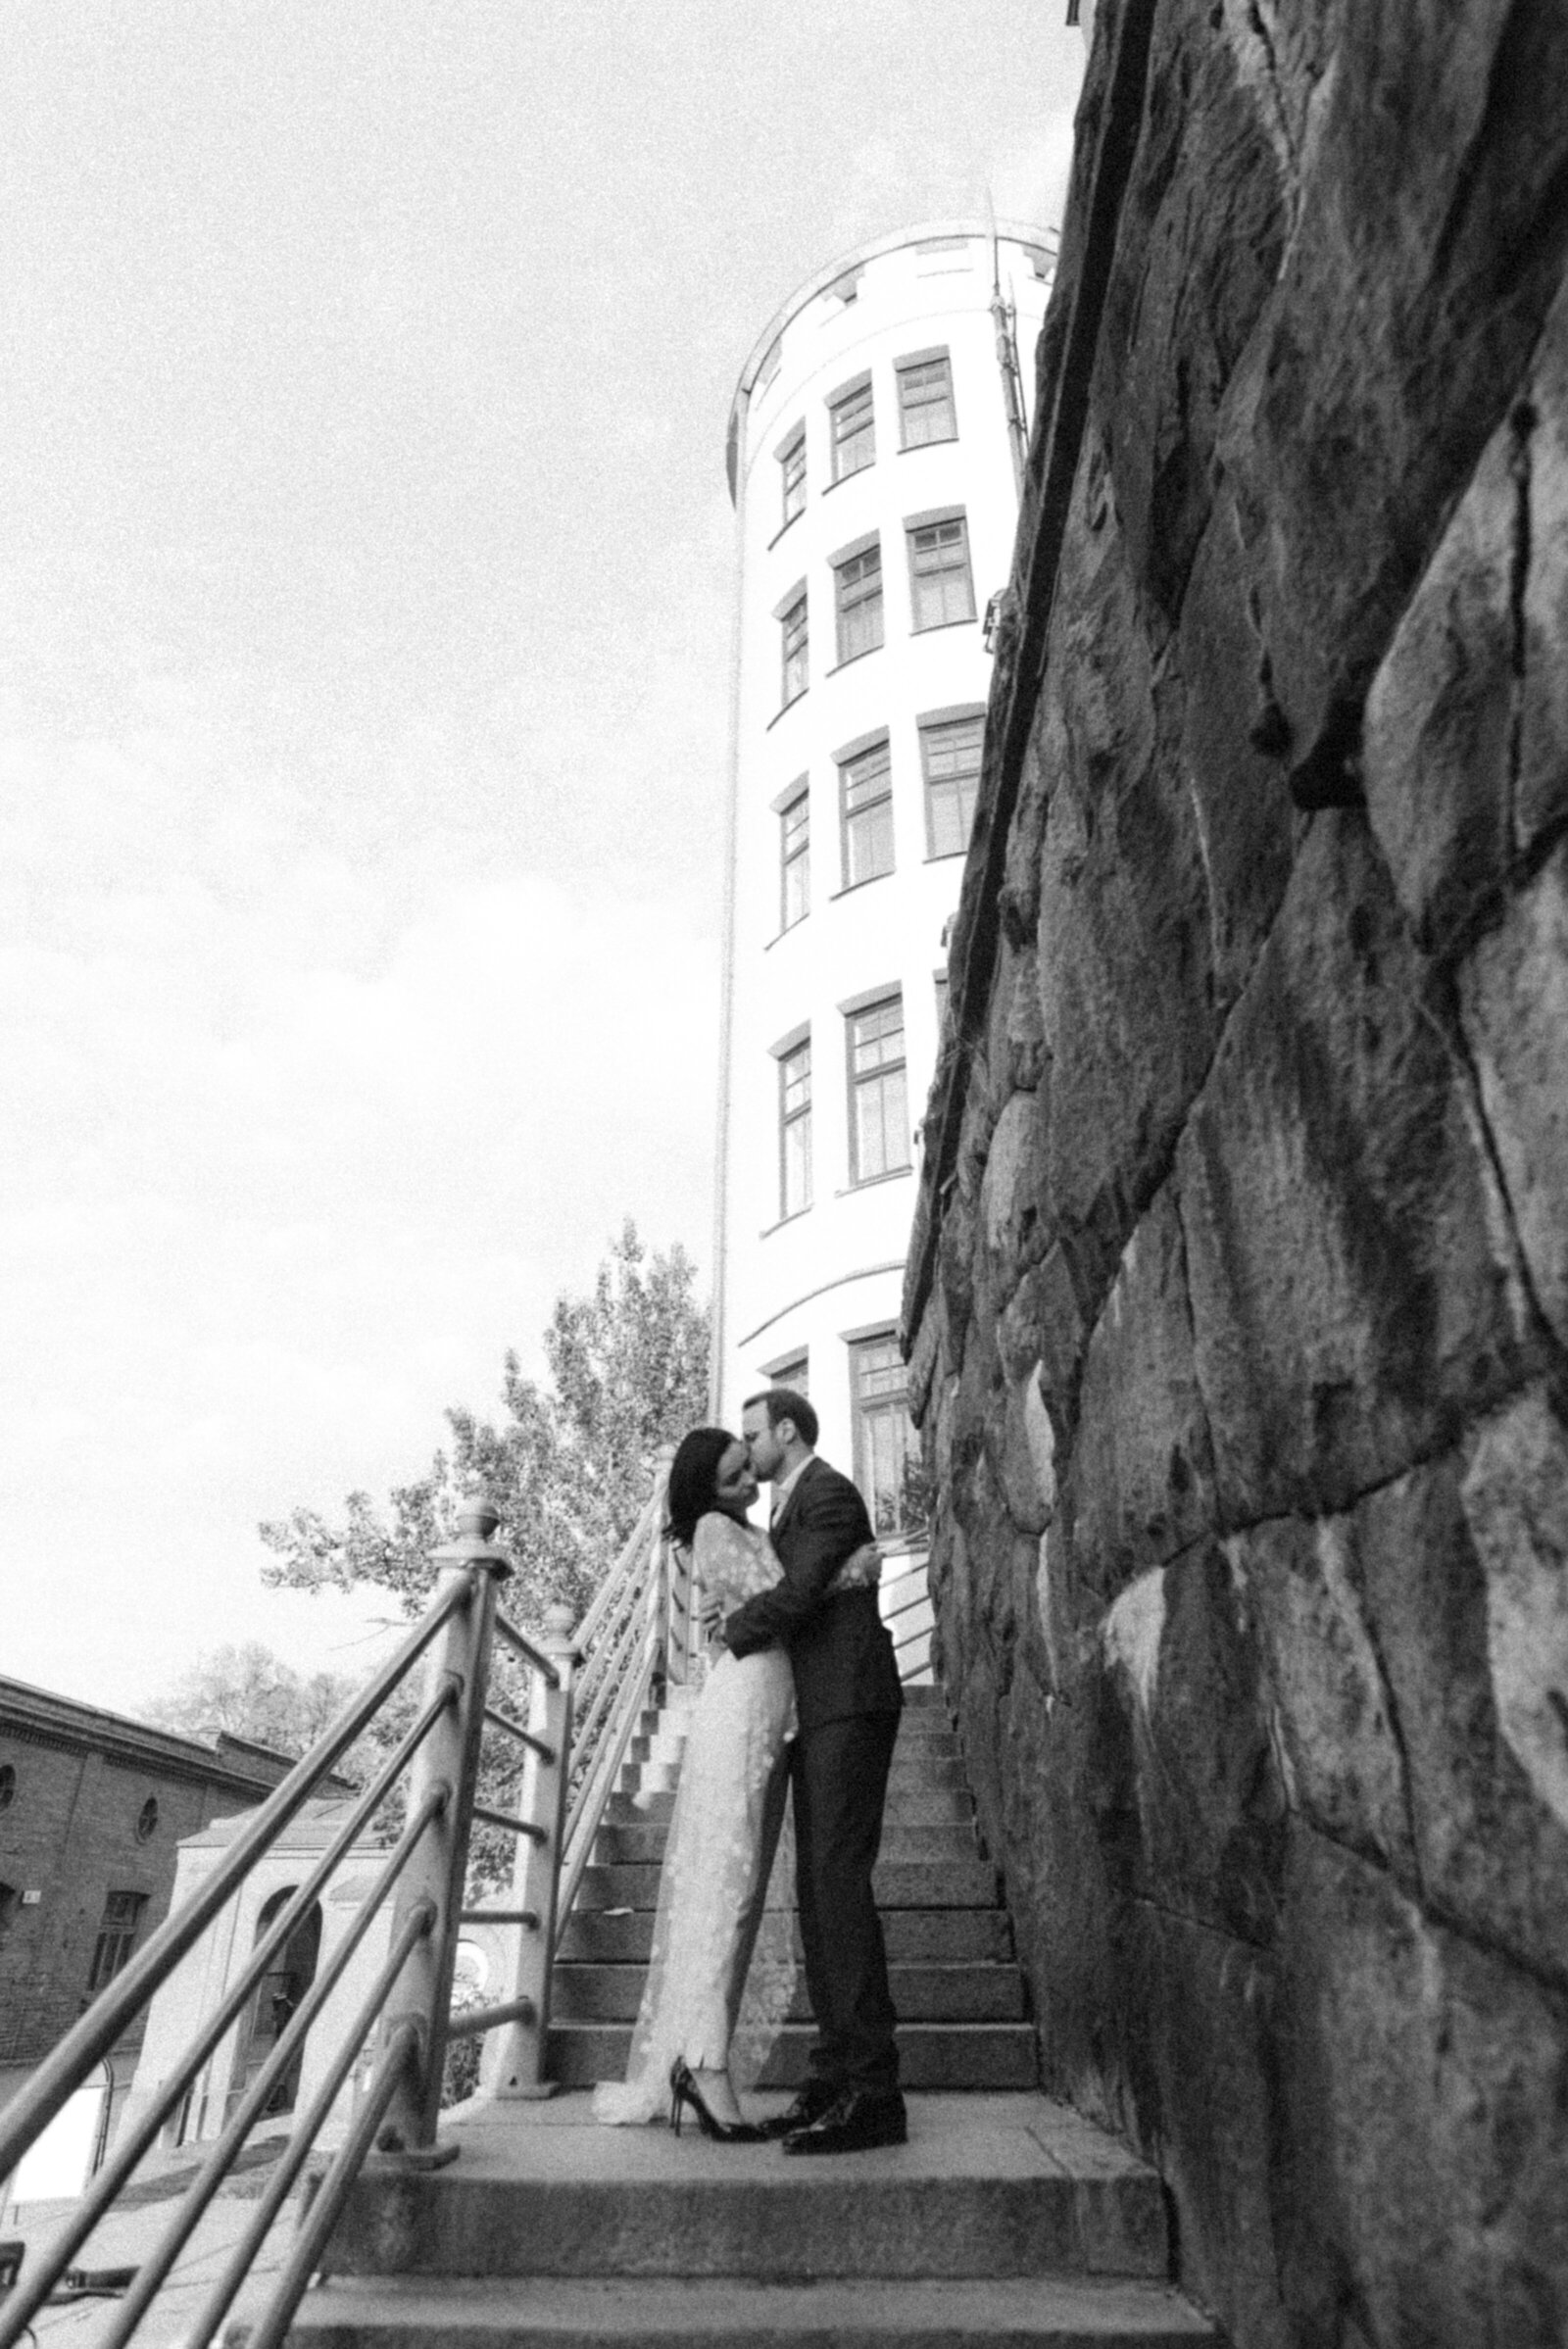 Hääpari seisoo portailla. Hääkuvaaja Hannika Garielssonin ottama kuva.